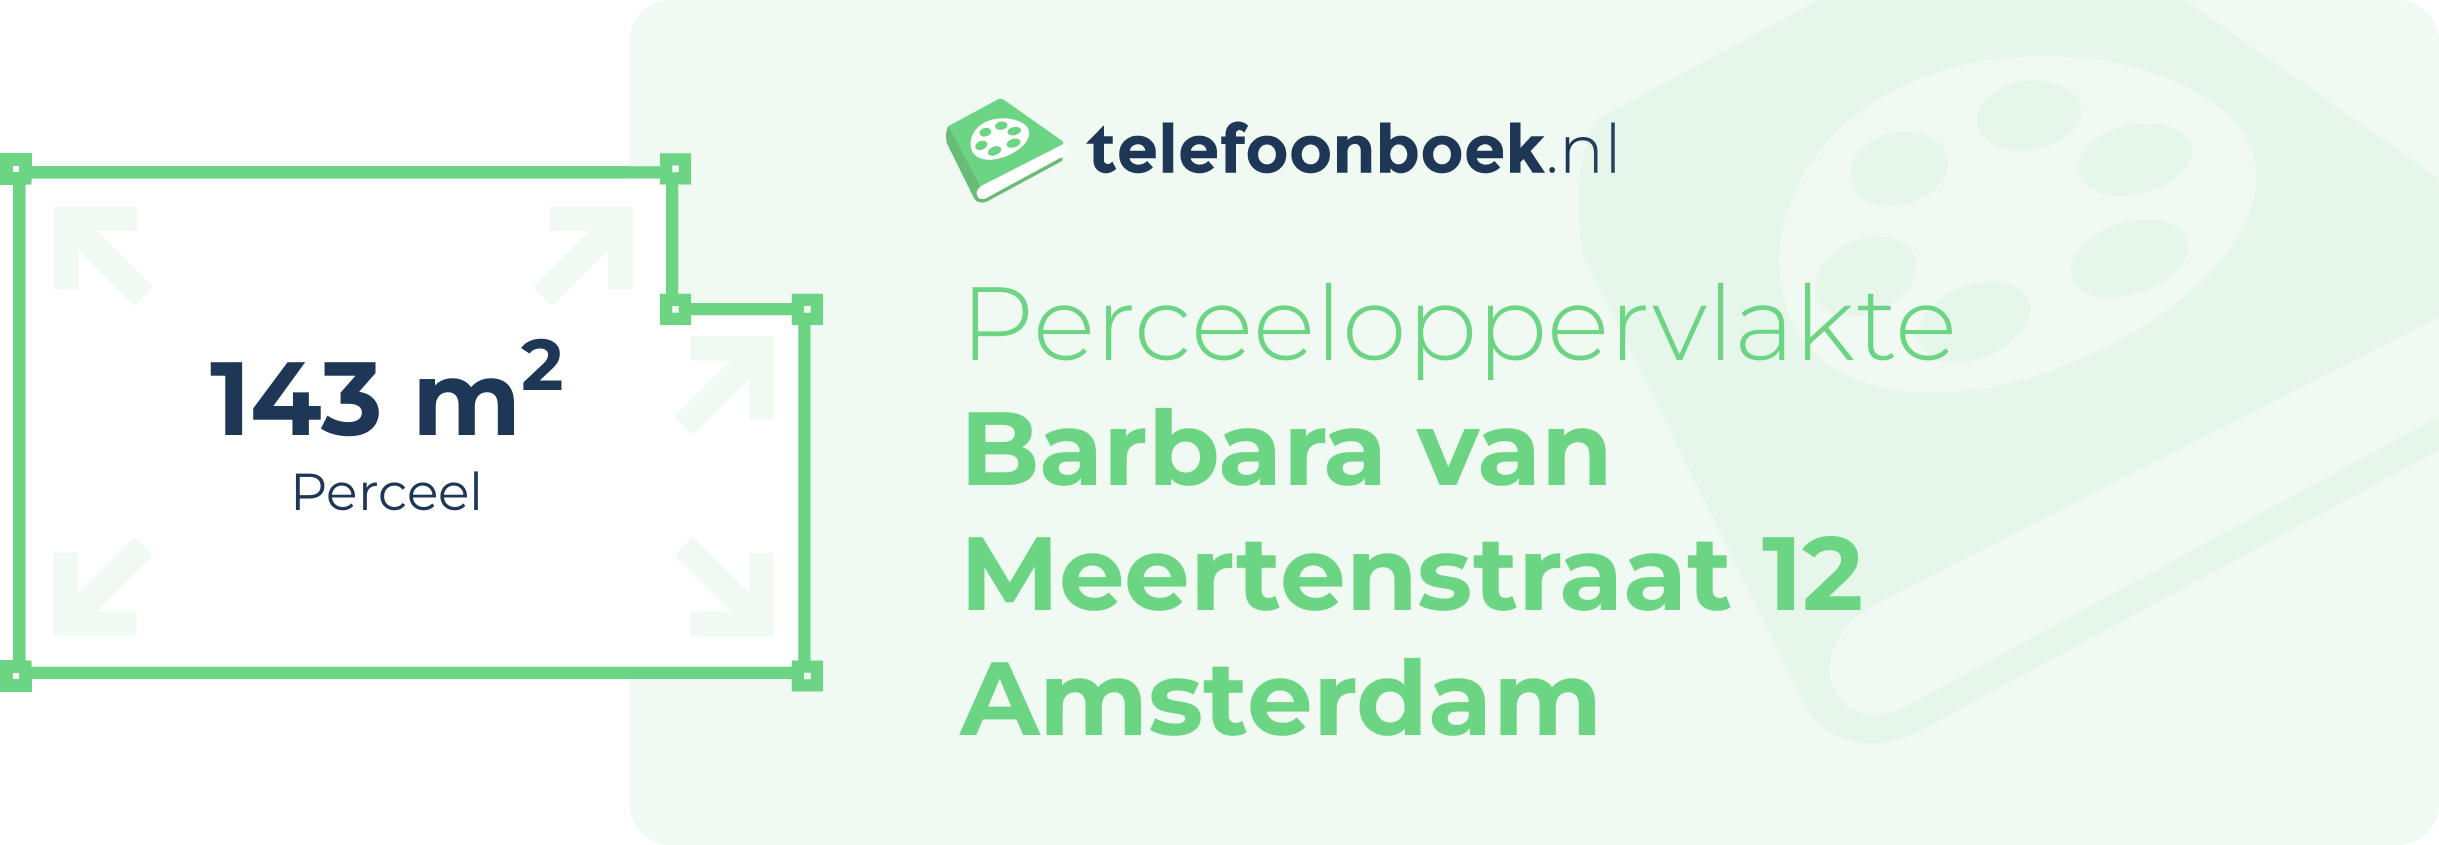 Perceeloppervlakte Barbara Van Meertenstraat 12 Amsterdam